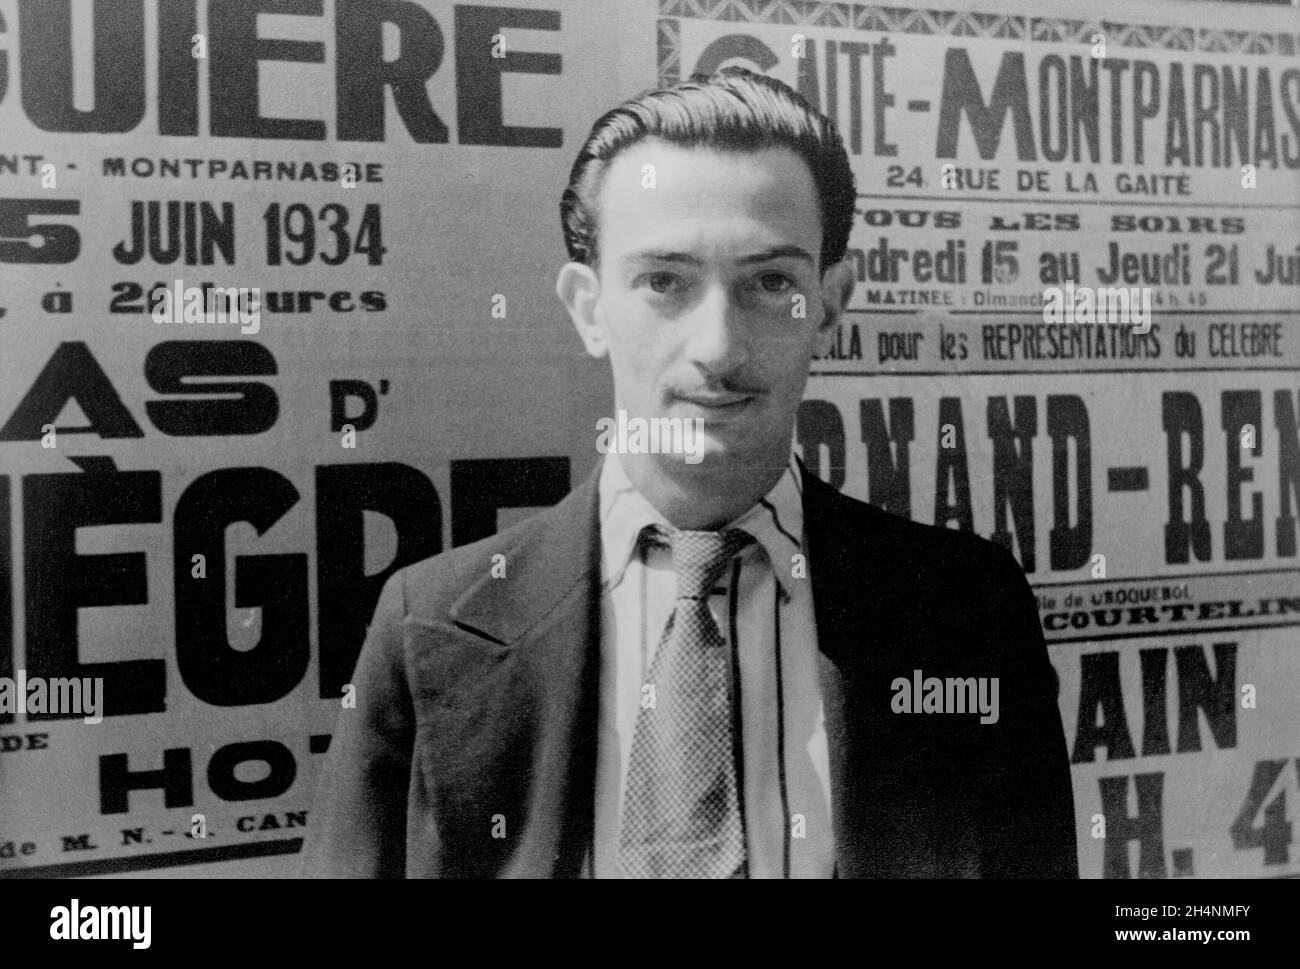 PARIS, FRANCE - 29 novembre 1939 - Portrait du jeune surréaliste artiste espagnol Salvador Dali - photo: Geopix/Carl van Vechten Banque D'Images